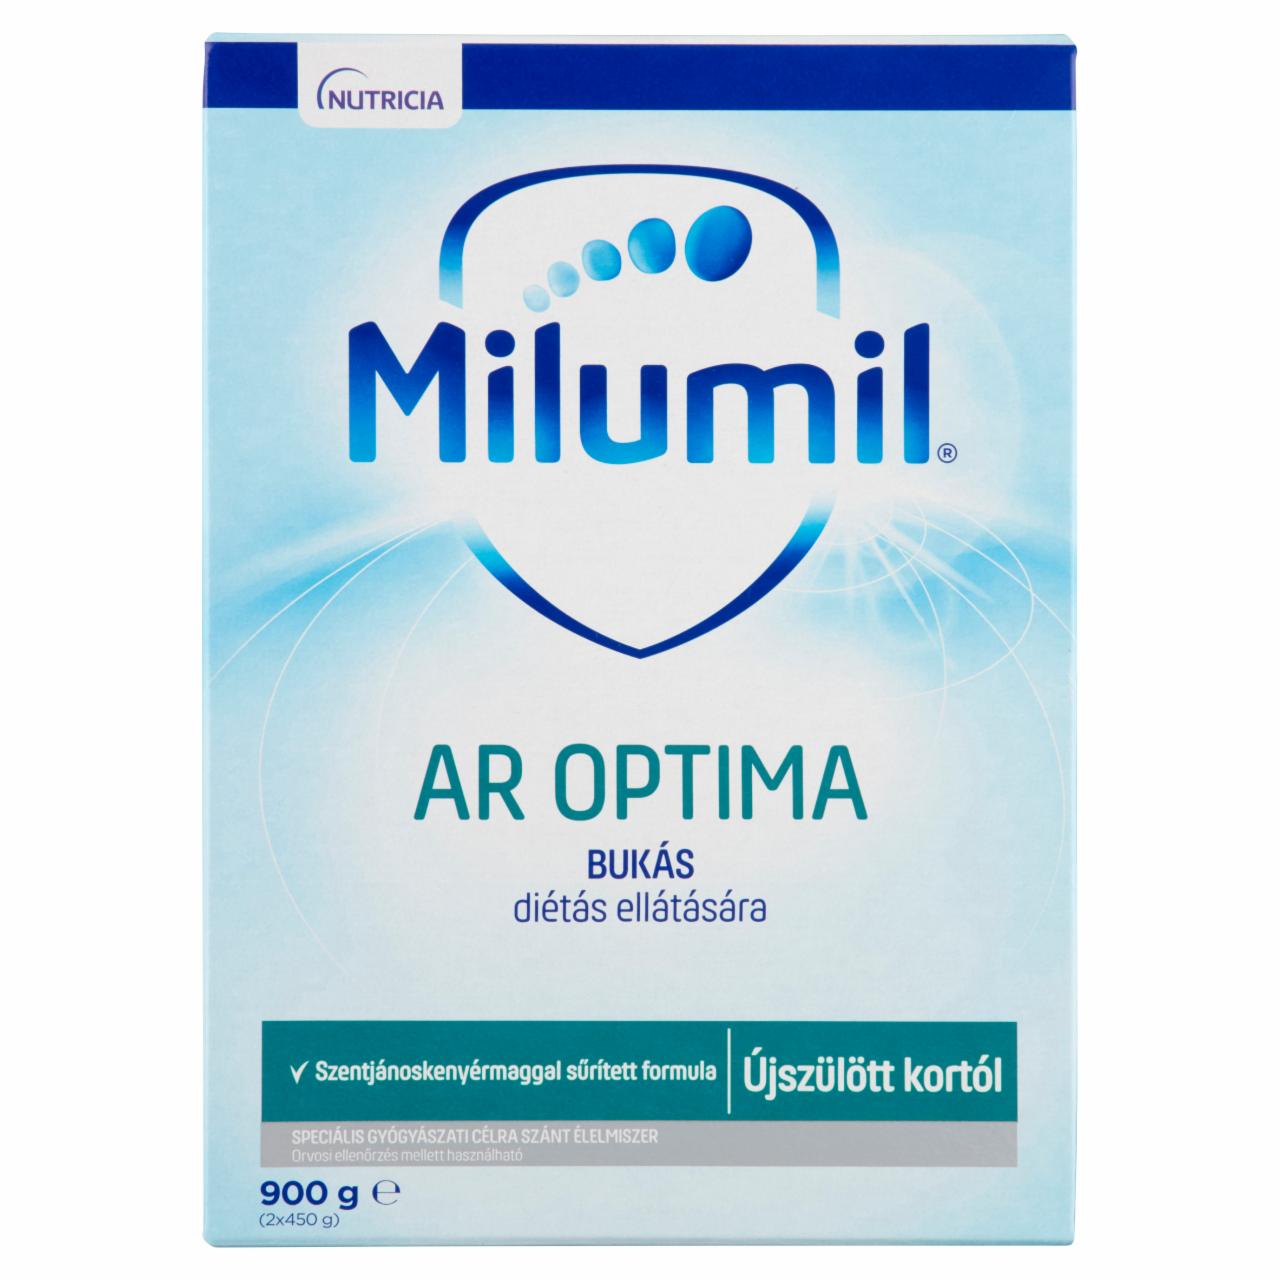 Képek - Milumil AR Optima speciális gyógyászati célra szánt élelmiszer újszülött kortól 2 x 450 g (900 g)